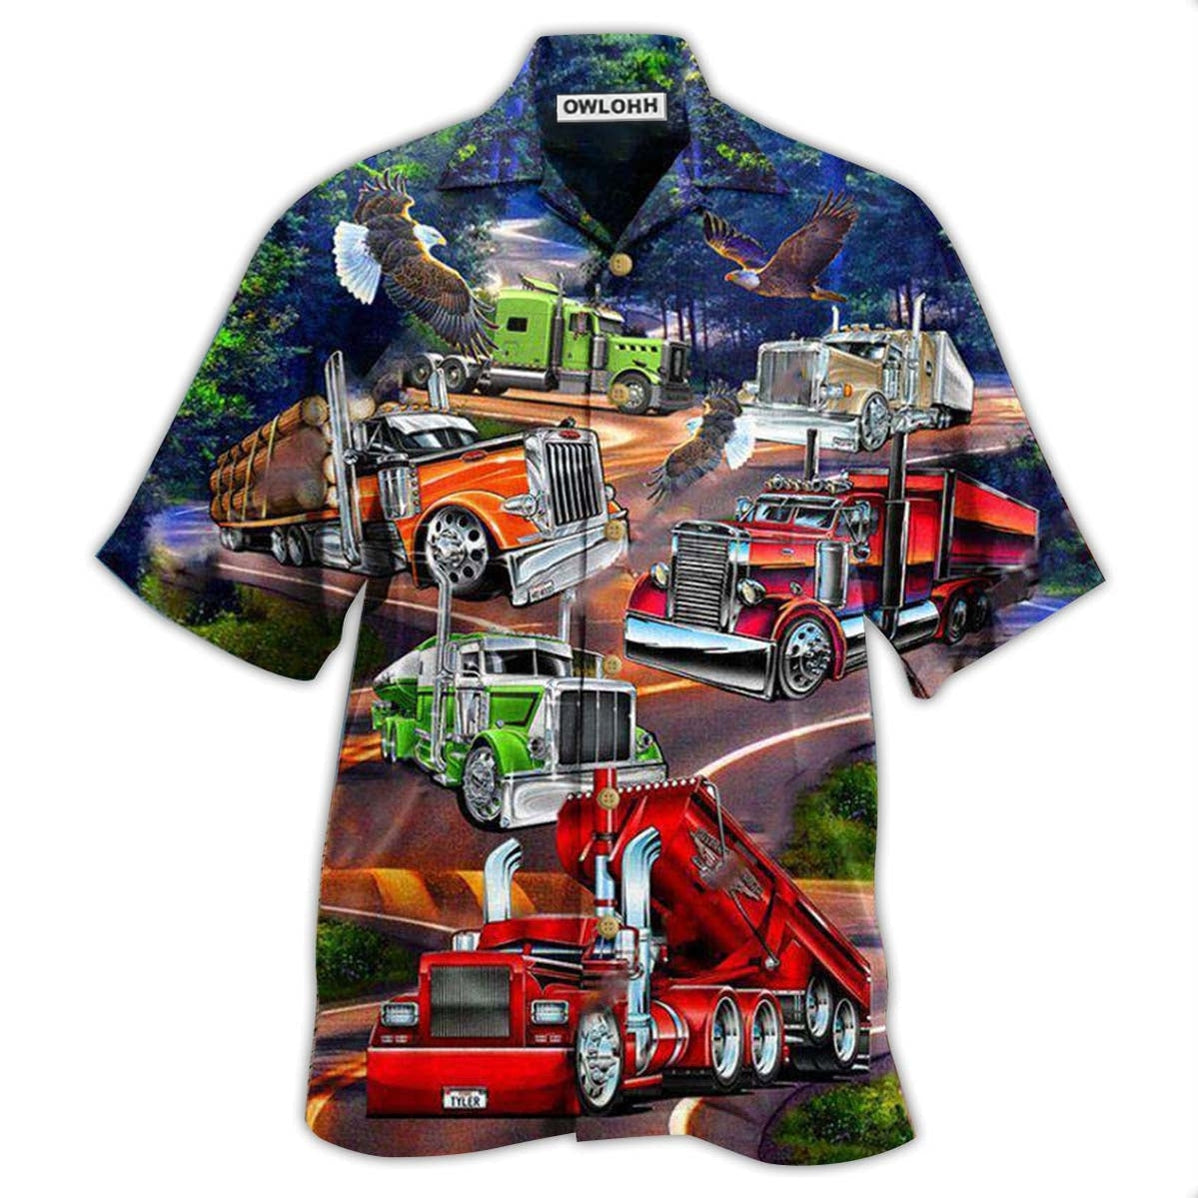 Hawaiian Shirt / Adults / S Truck Proud American Trucker With Eagle - Hawaiian Shirt - Owls Matrix LTD